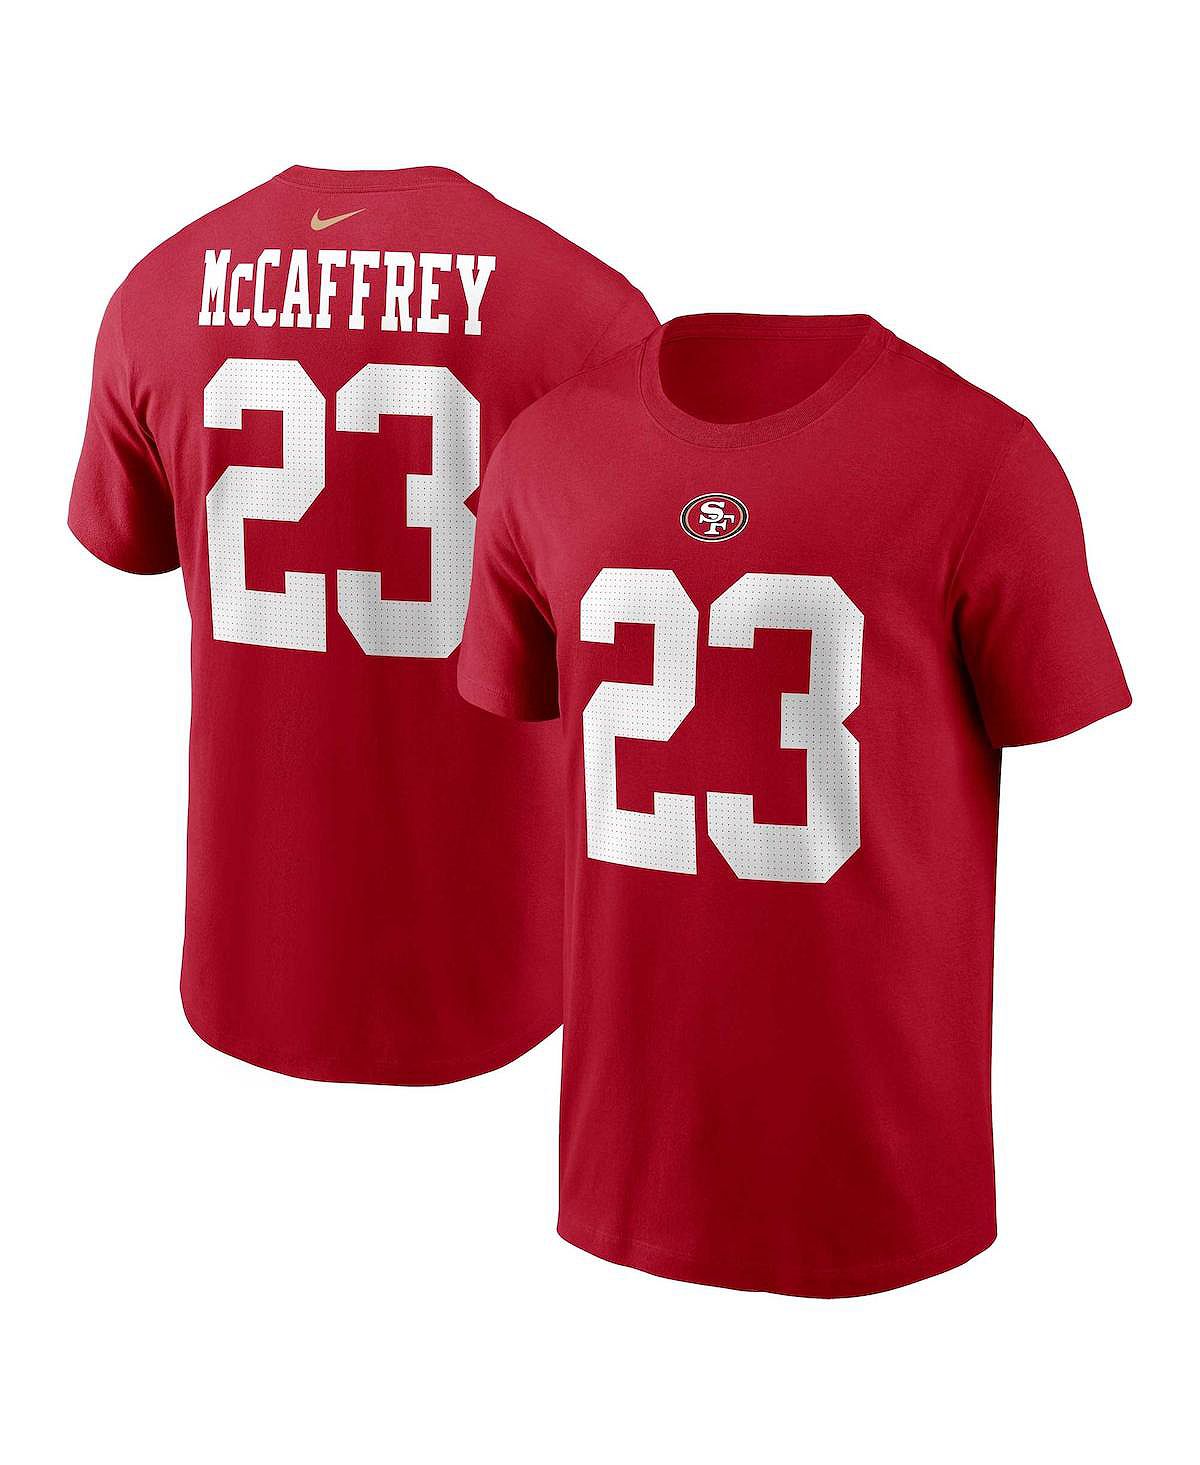 Мужская футболка Christian McCaffrey Scarlet San Francisco 49ers с именем и номером игрока Nike мужская футболка с разрезом san francisco 49ers черного и серого цвета с меланжевым покрытием refried apparel мульти